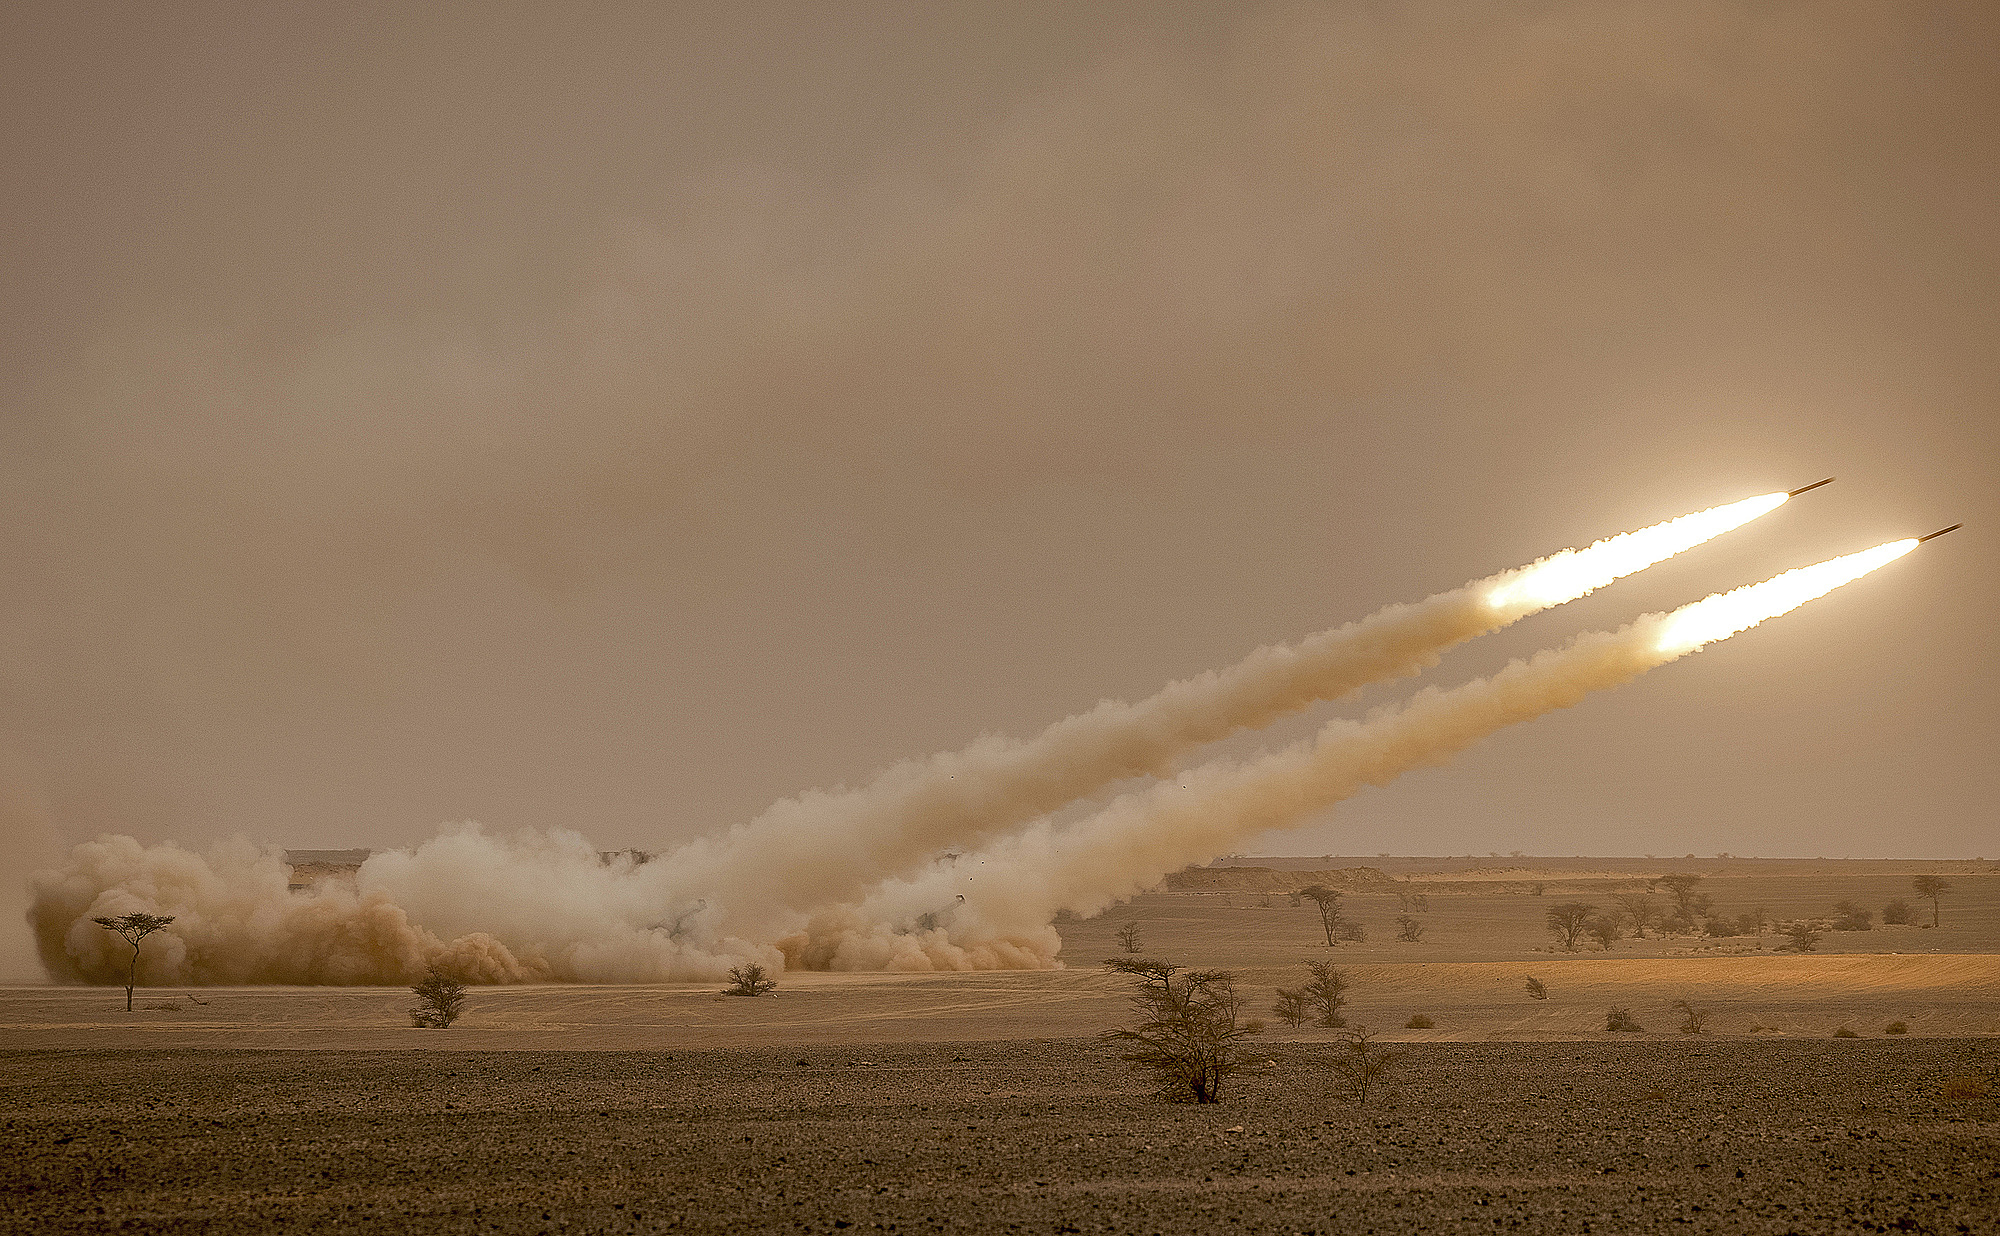 Hệ thống pháo phản lực cơ động cao M142 (HIMARS) phóng hỏa lực trong cuộc tập trận quân sự Sư tử châu Phi ở vùng Grier Labouihi, đông nam Morocco, ngày 9/6/2021. Ảnh: AFP.